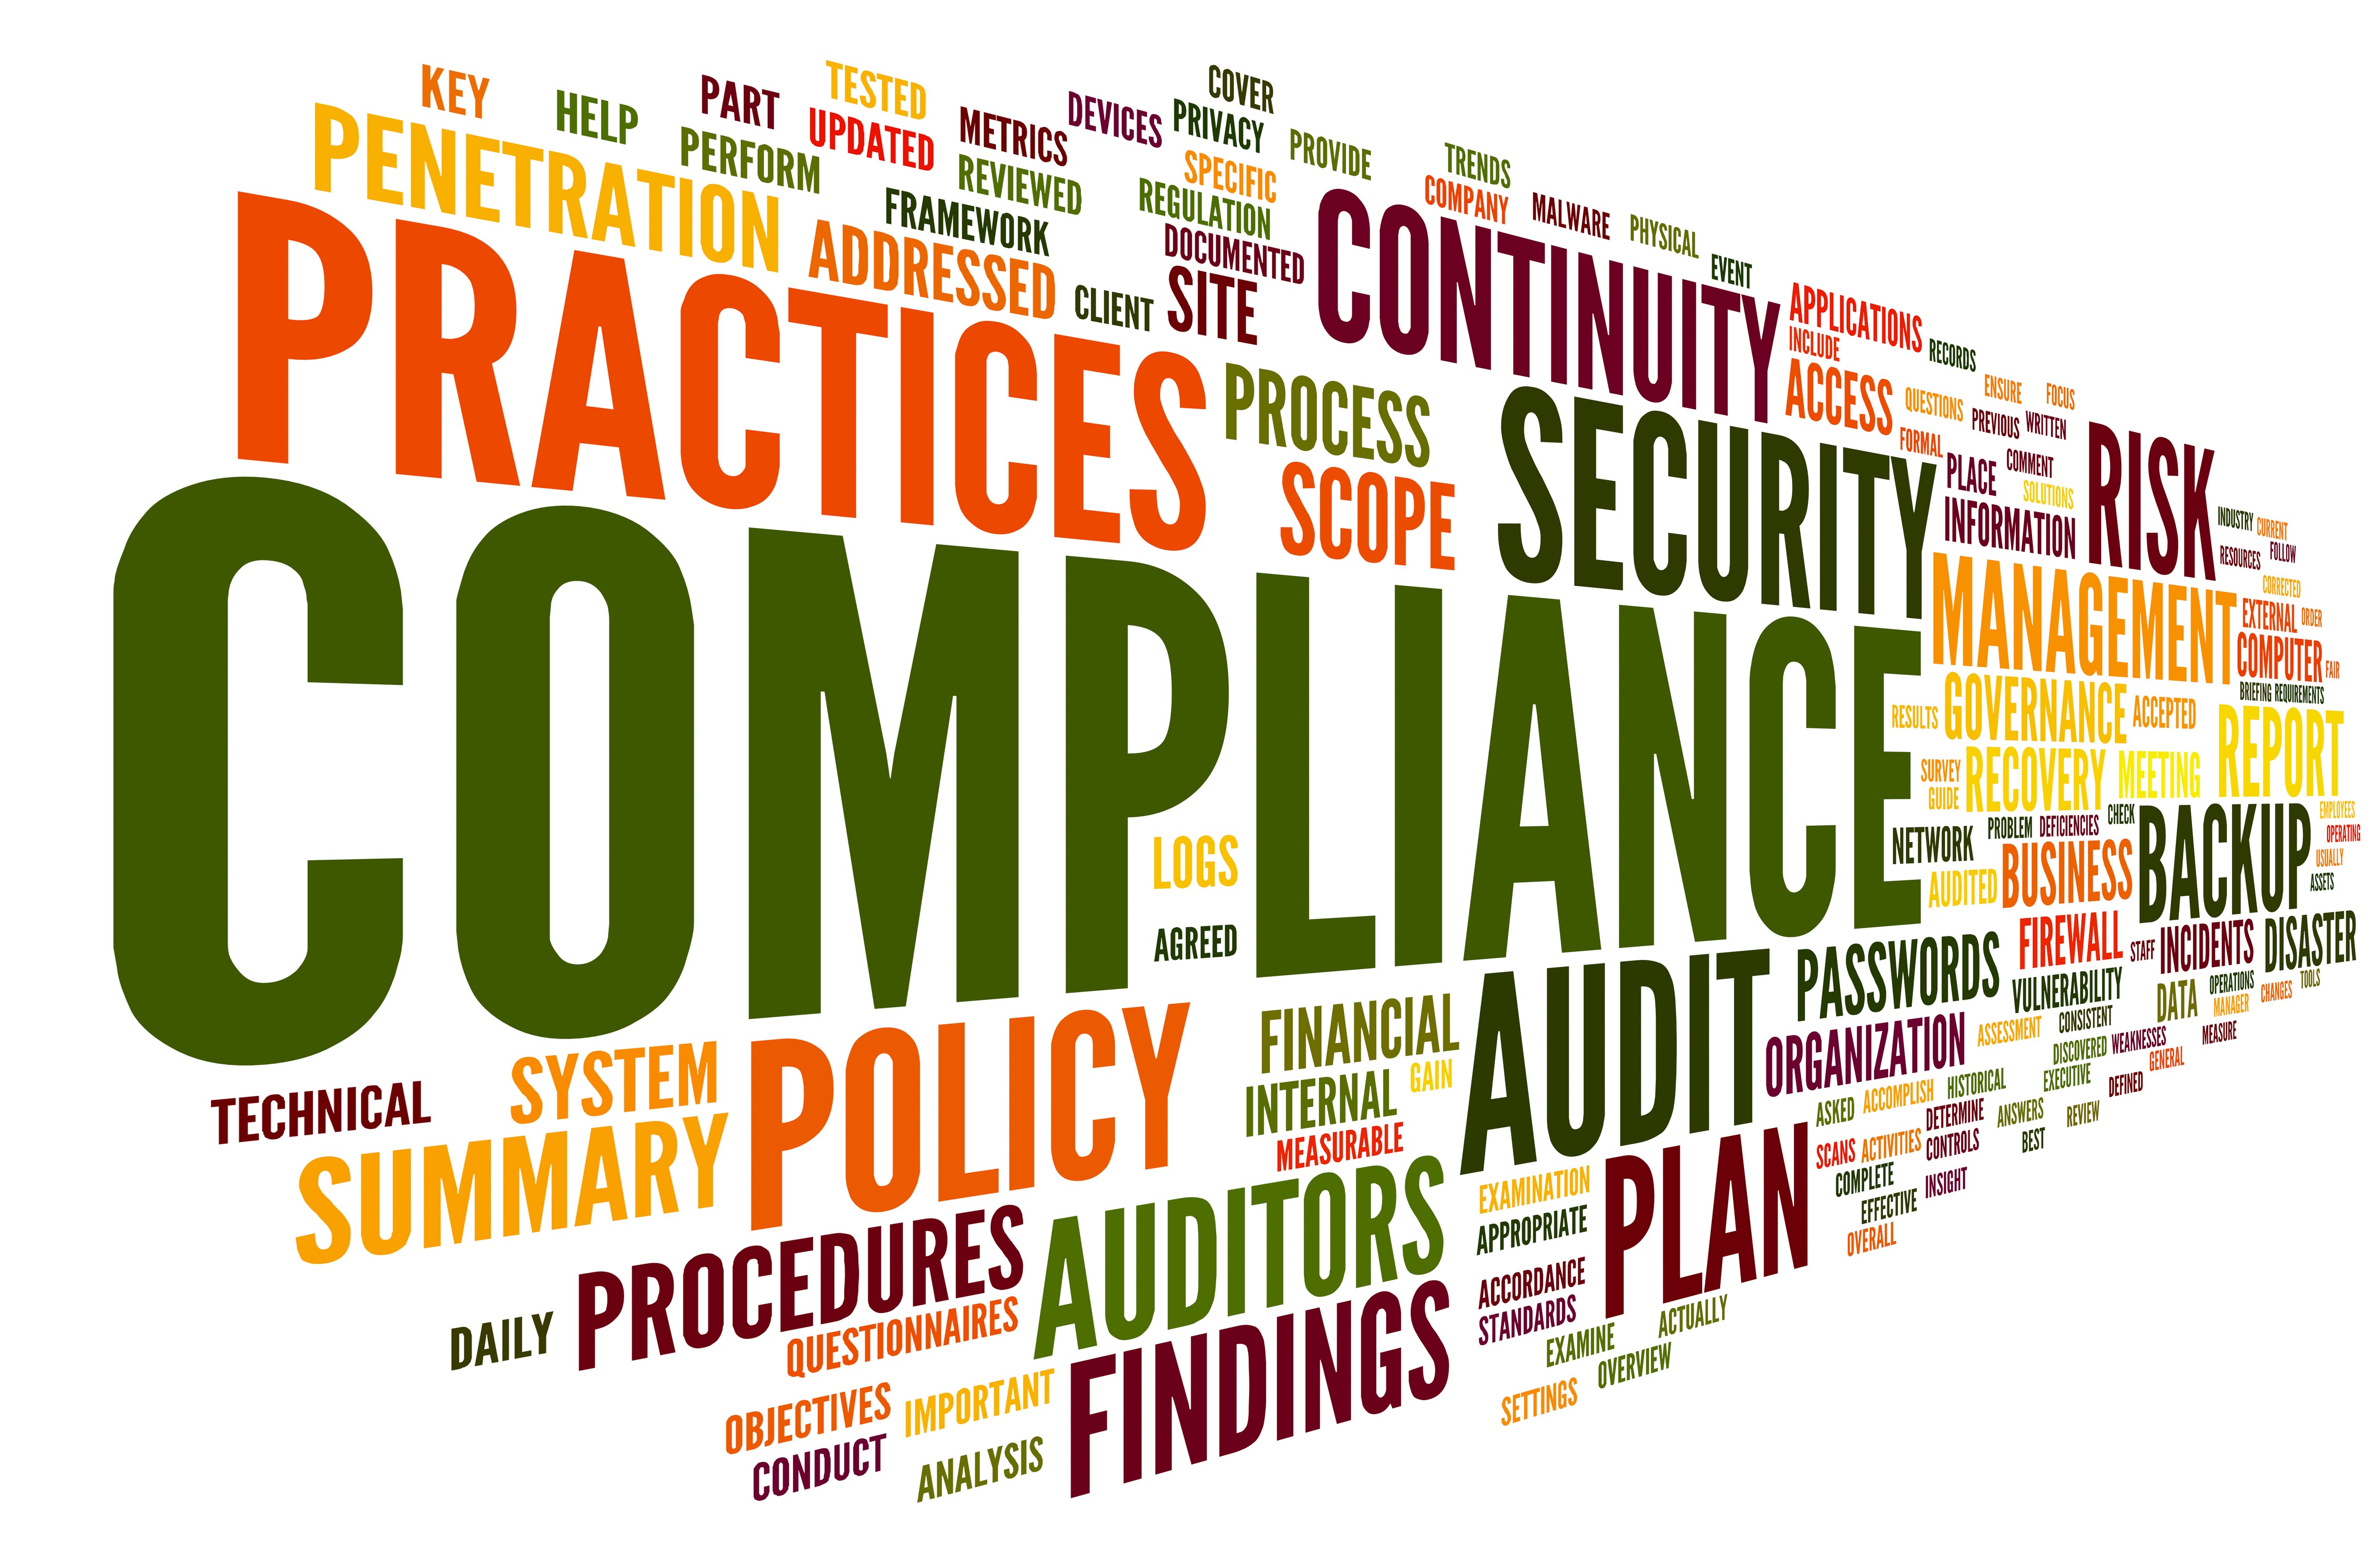 Os 9 passos essenciais para fortalecer o compliance e a governança corporativa nas empresas